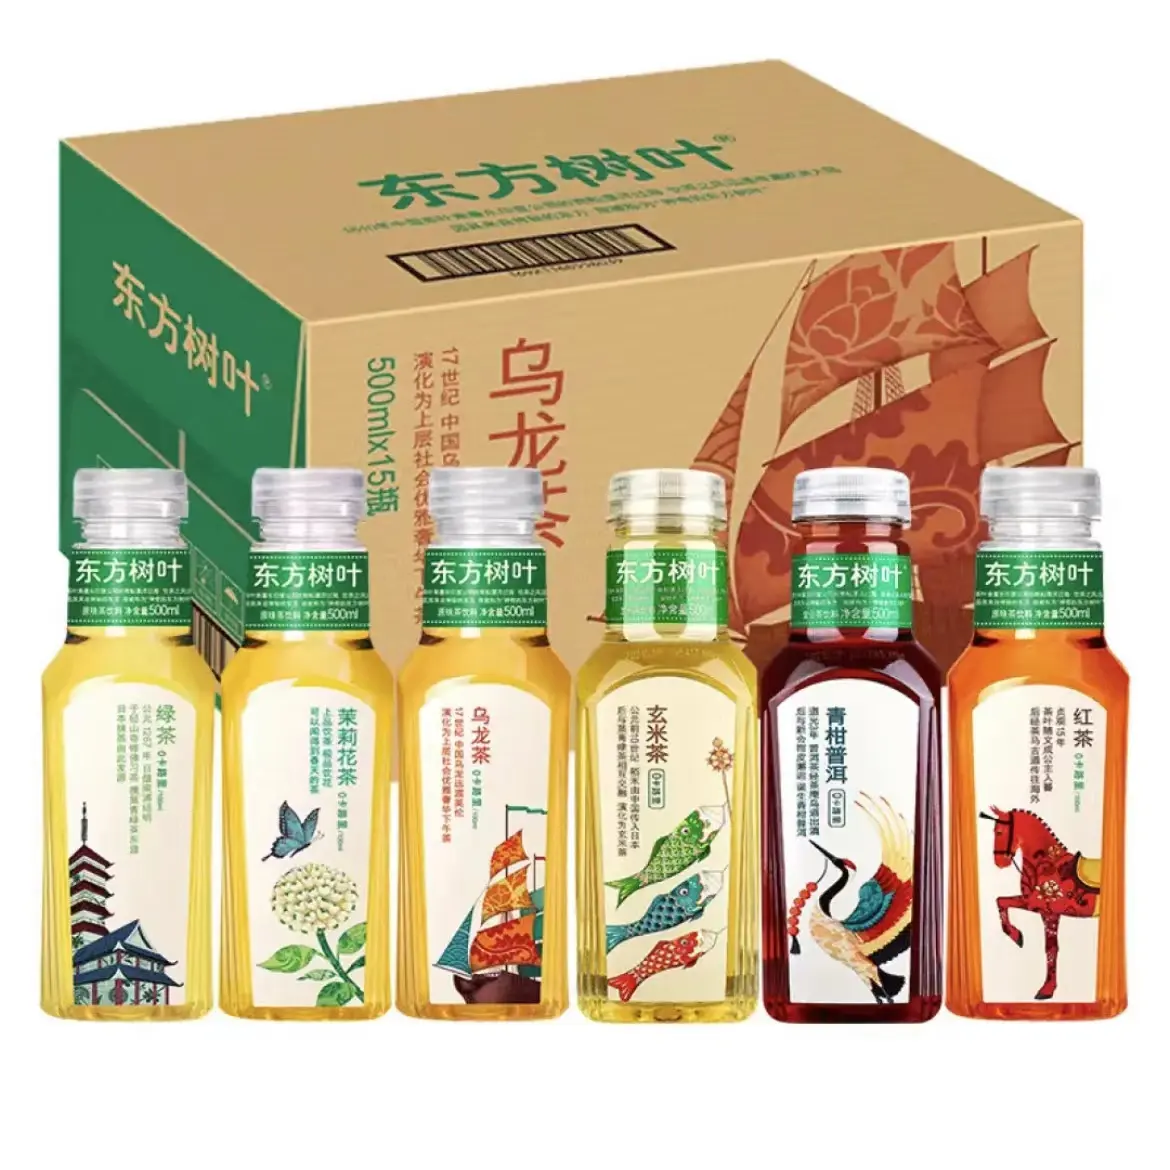 ขายส่ง Nongfu ฤดูใบไม้ผลิโอเรียนเต็ลต้นไม้ใบ500มิลลิลิตรสีเขียวสีส้ม Pu'er ชาแปลกใหม่อาหารว่างและเครื่องดื่ม